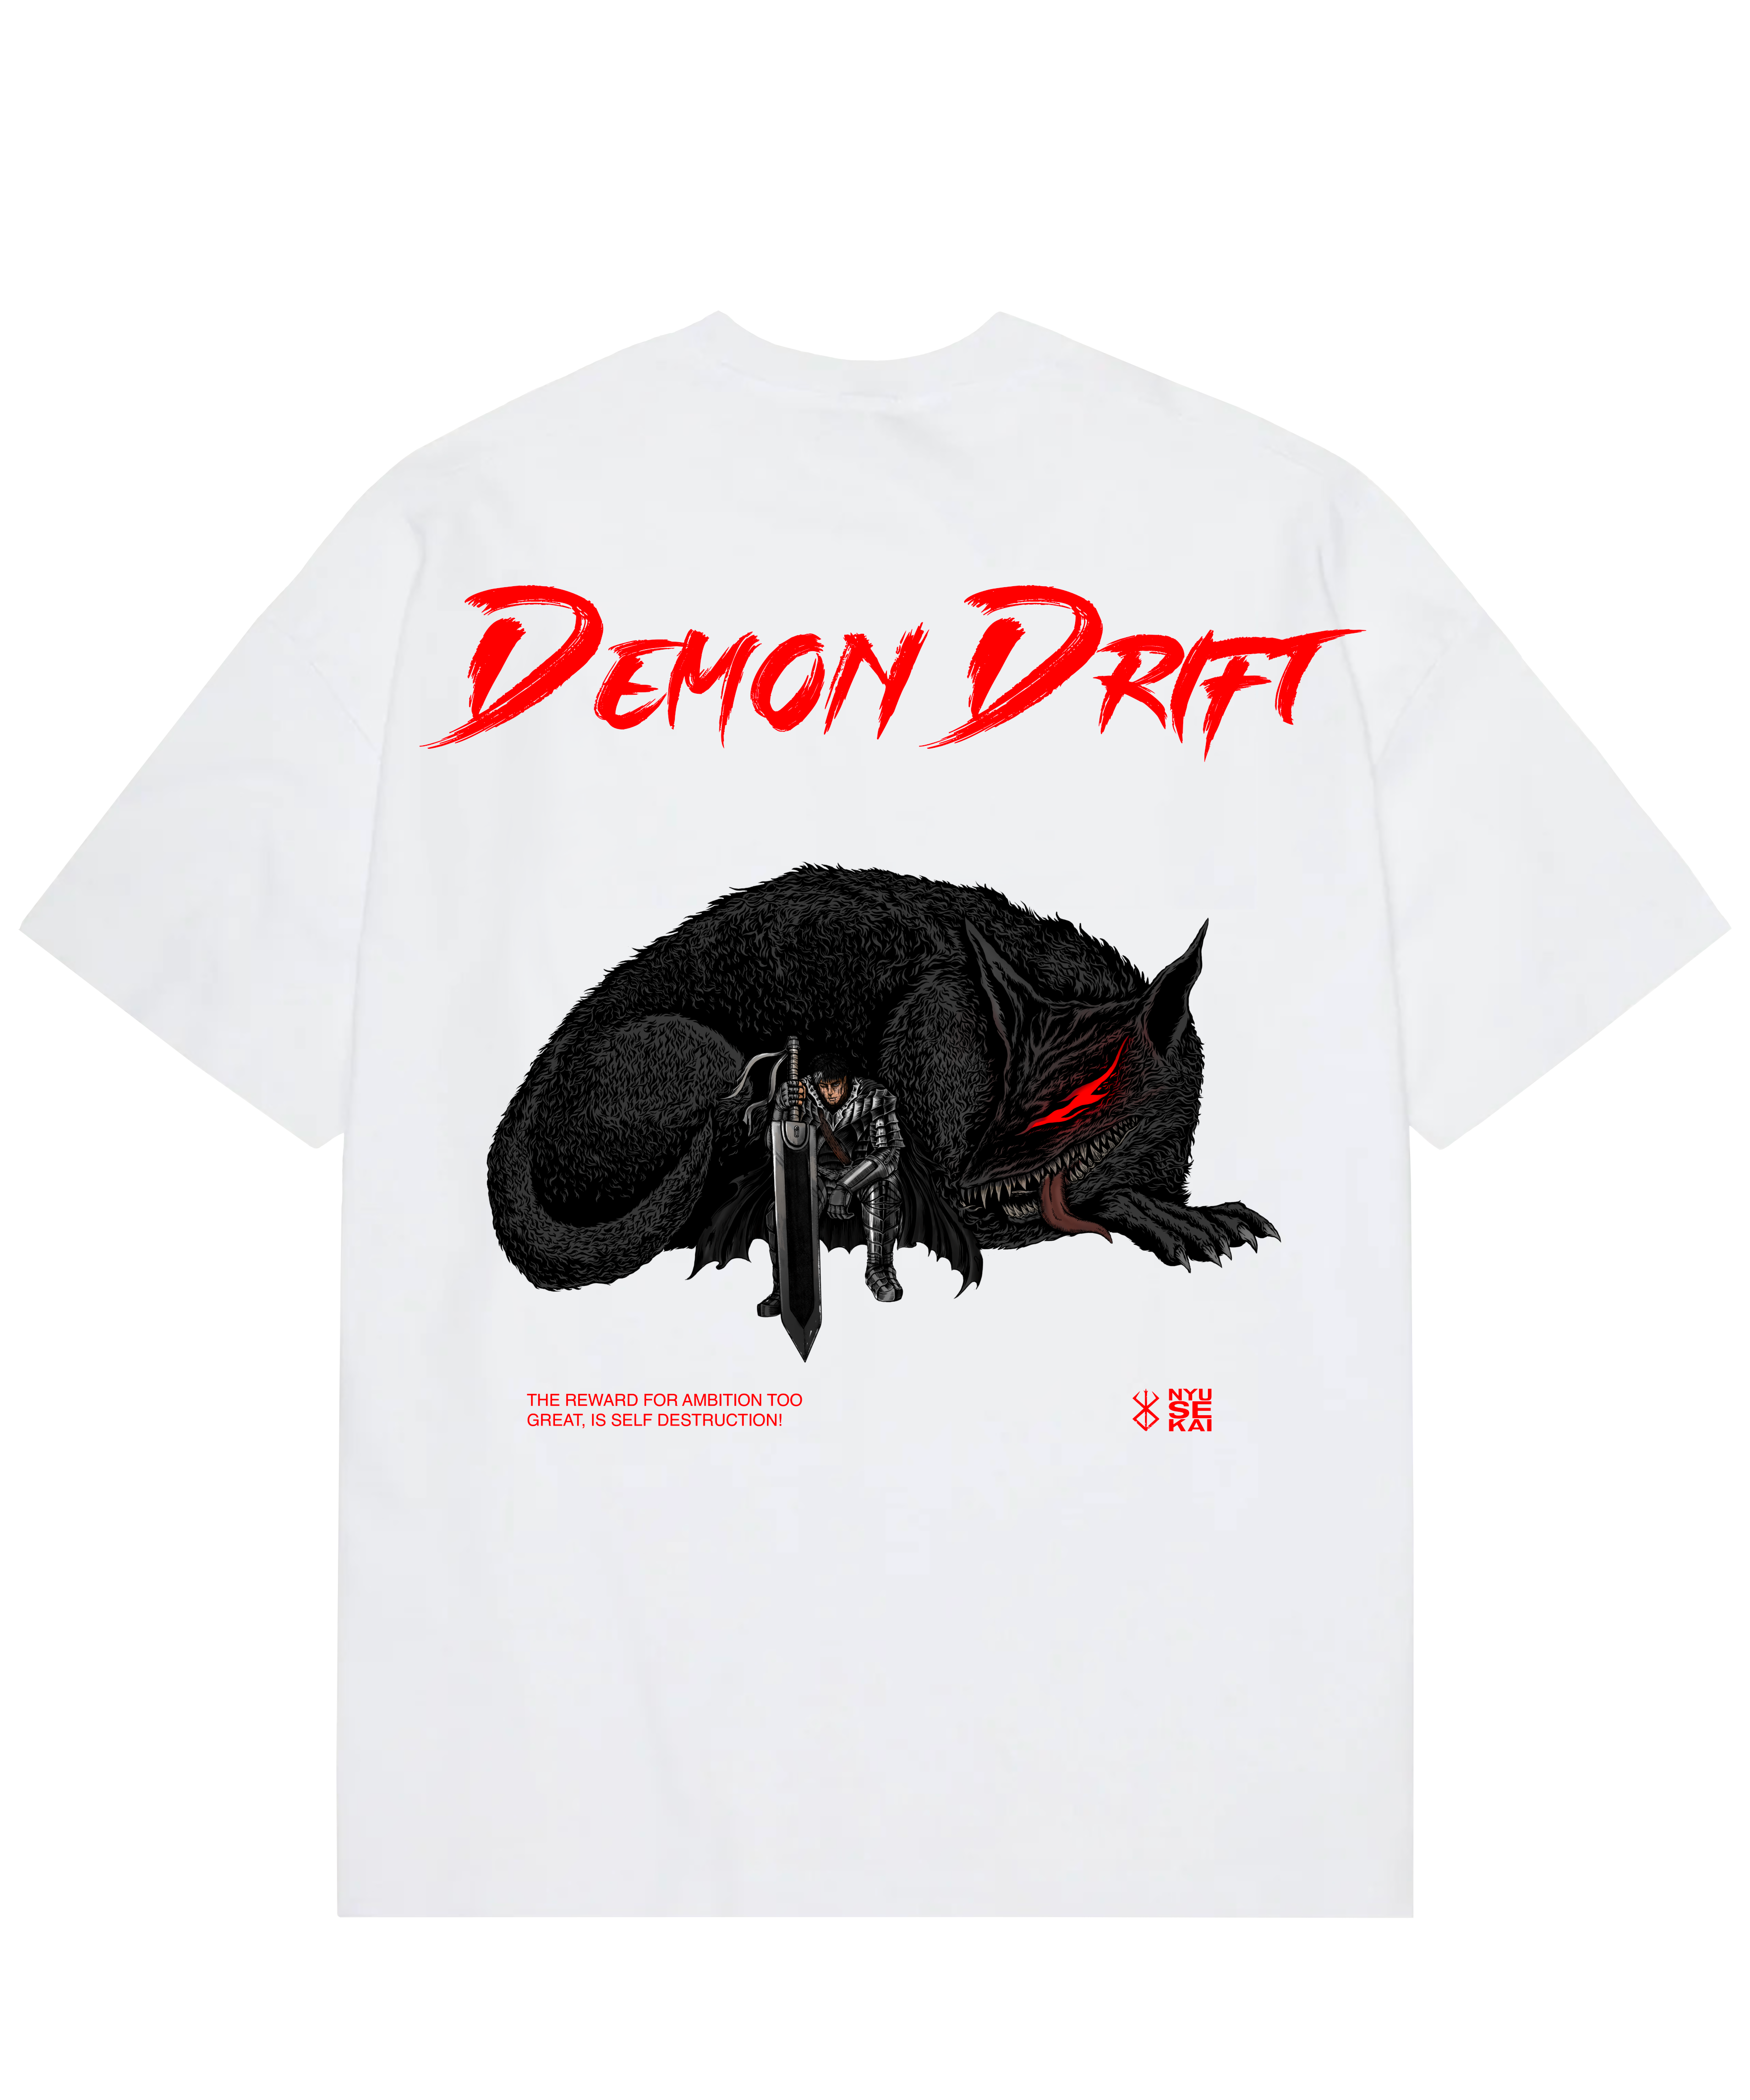 "Guts X Demon Dog - Berserk" T-shirt oversize